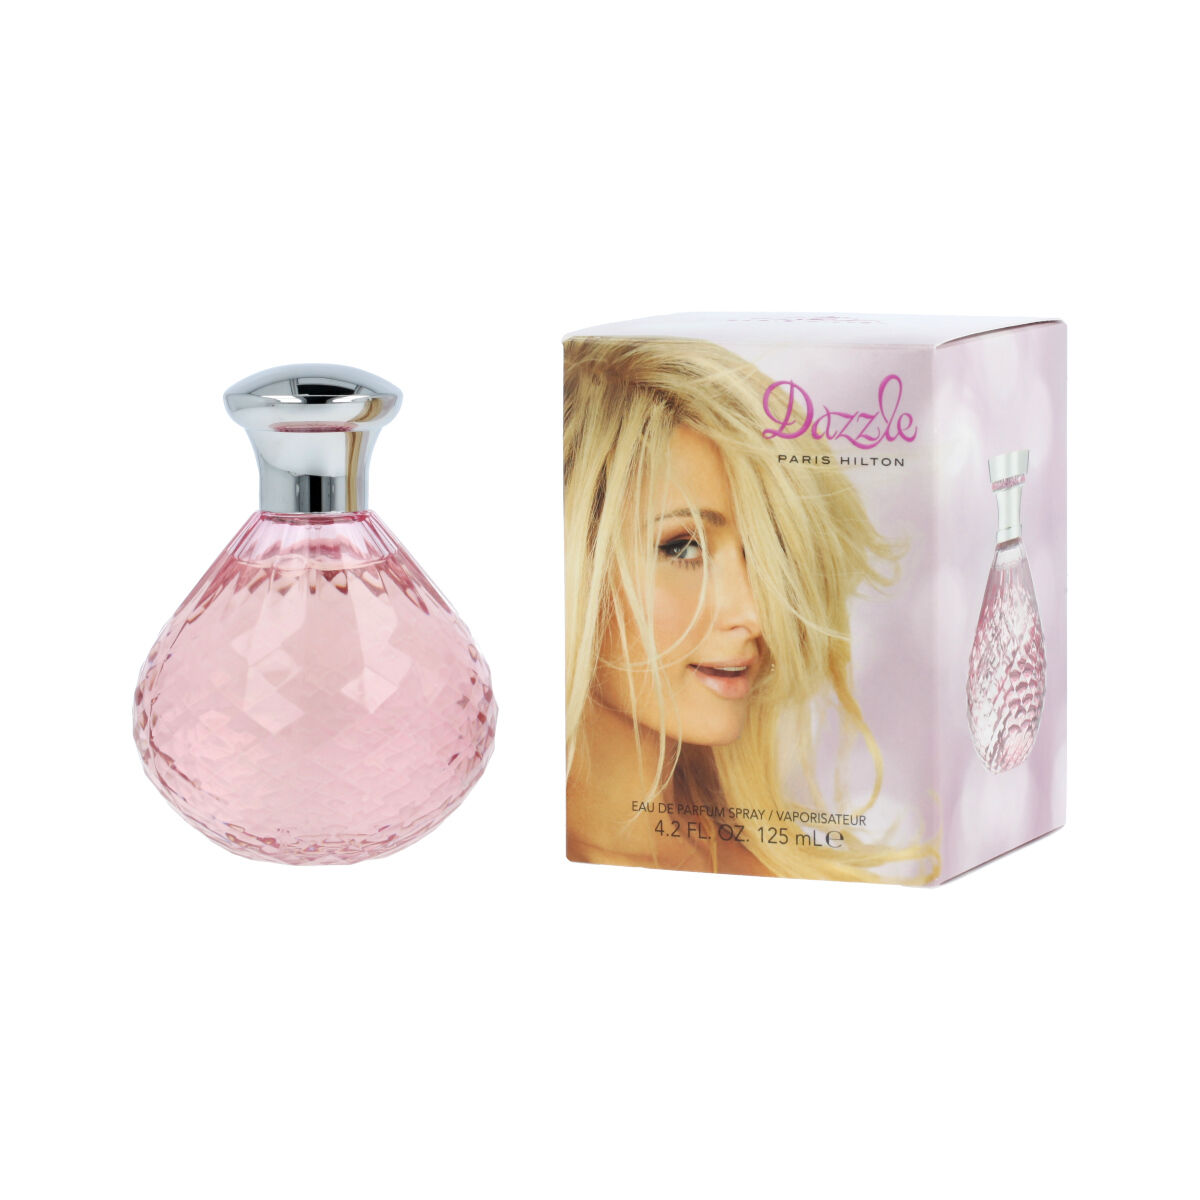 Parfum Femme Paris Hilton EDP Dazzle 125 ml